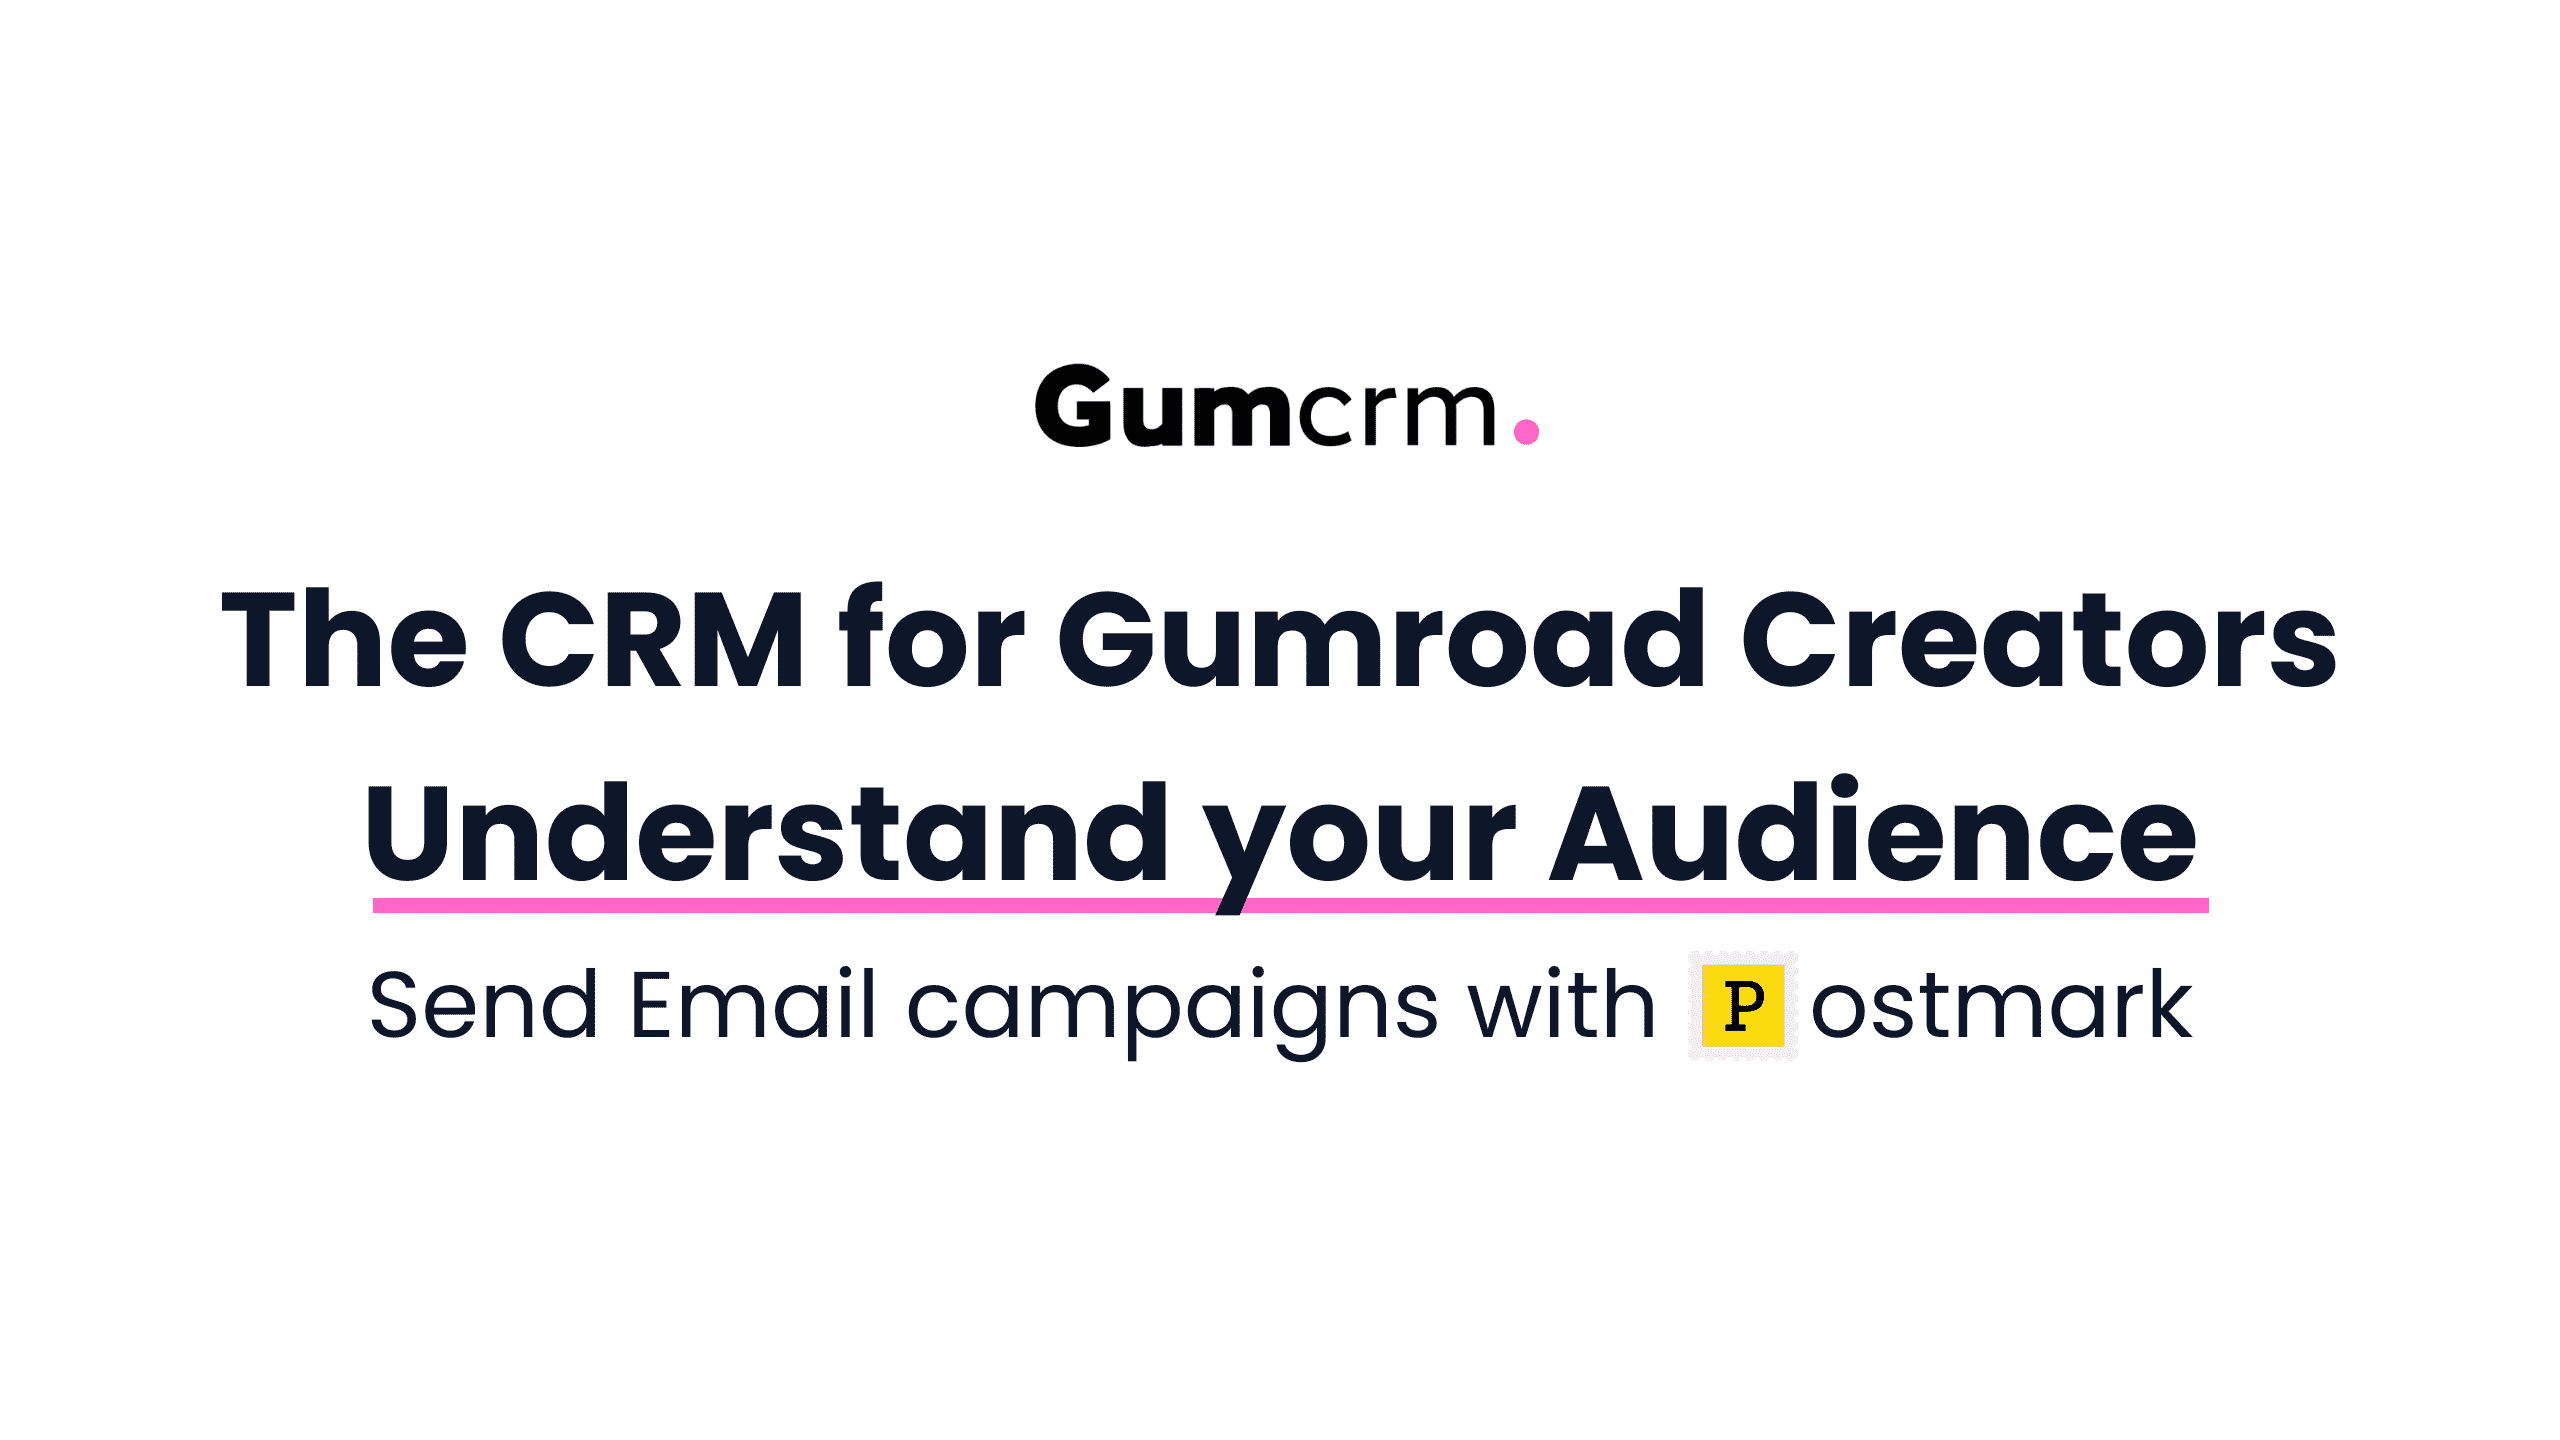 Introducing Gumcrm - The CRM for Gumroad creators